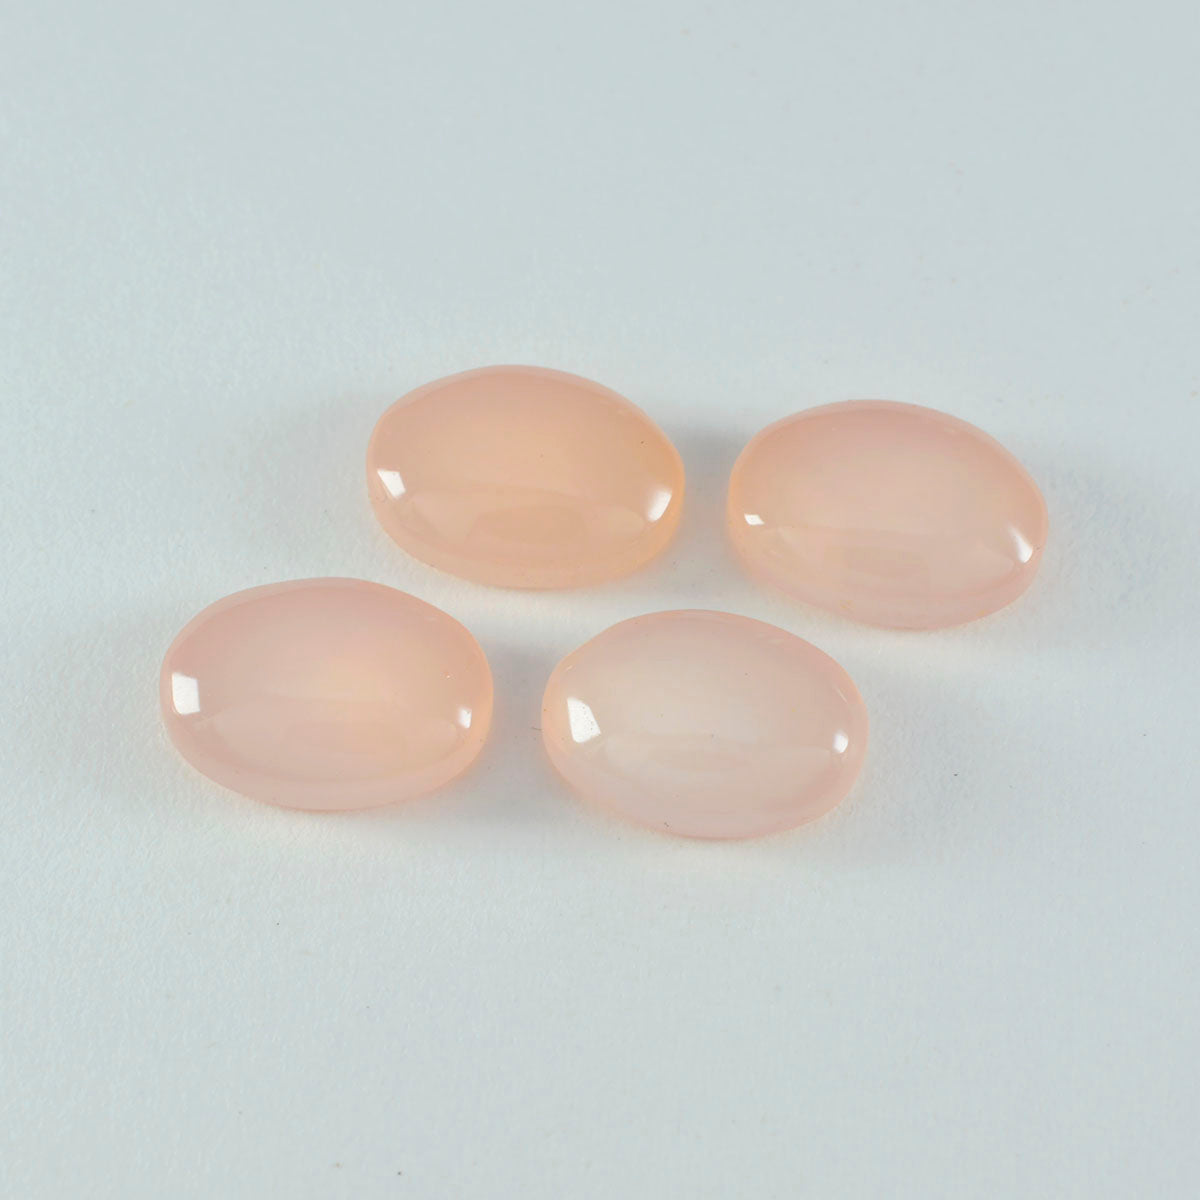 riyogems 1 pz cabochon di quarzo rosa rosa 9x11 mm di forma ovale, pietra preziosa sfusa di fantastica qualità